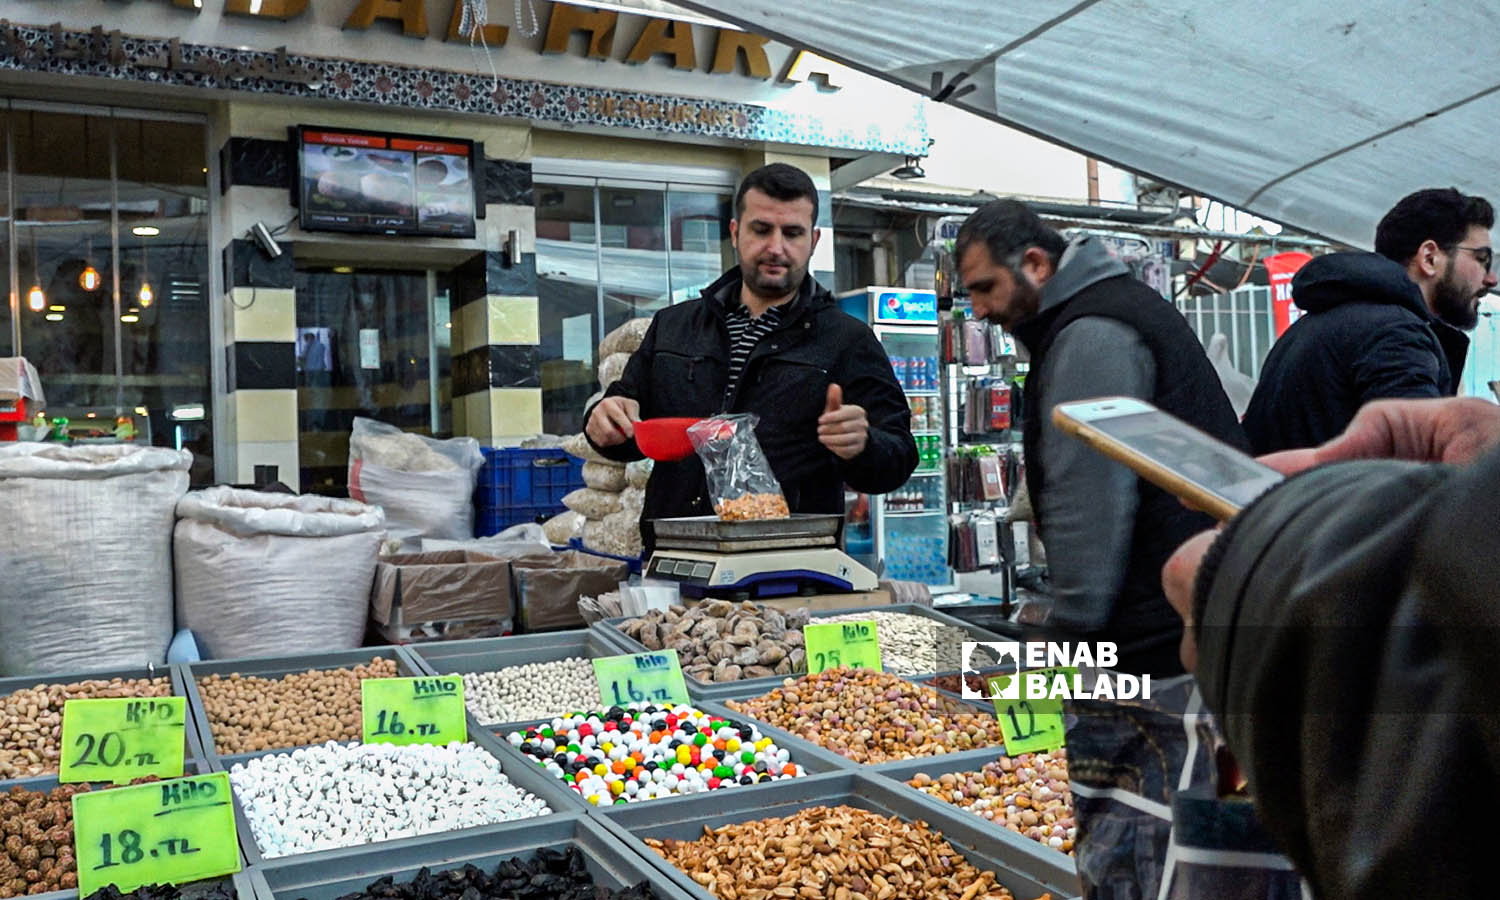 بازار الأربعاء في منطقة الفاتح في ولاية إسطنبول التركية - 26 كانون الأول 2018 ( عنب بلدي / عبد المعين حمص )